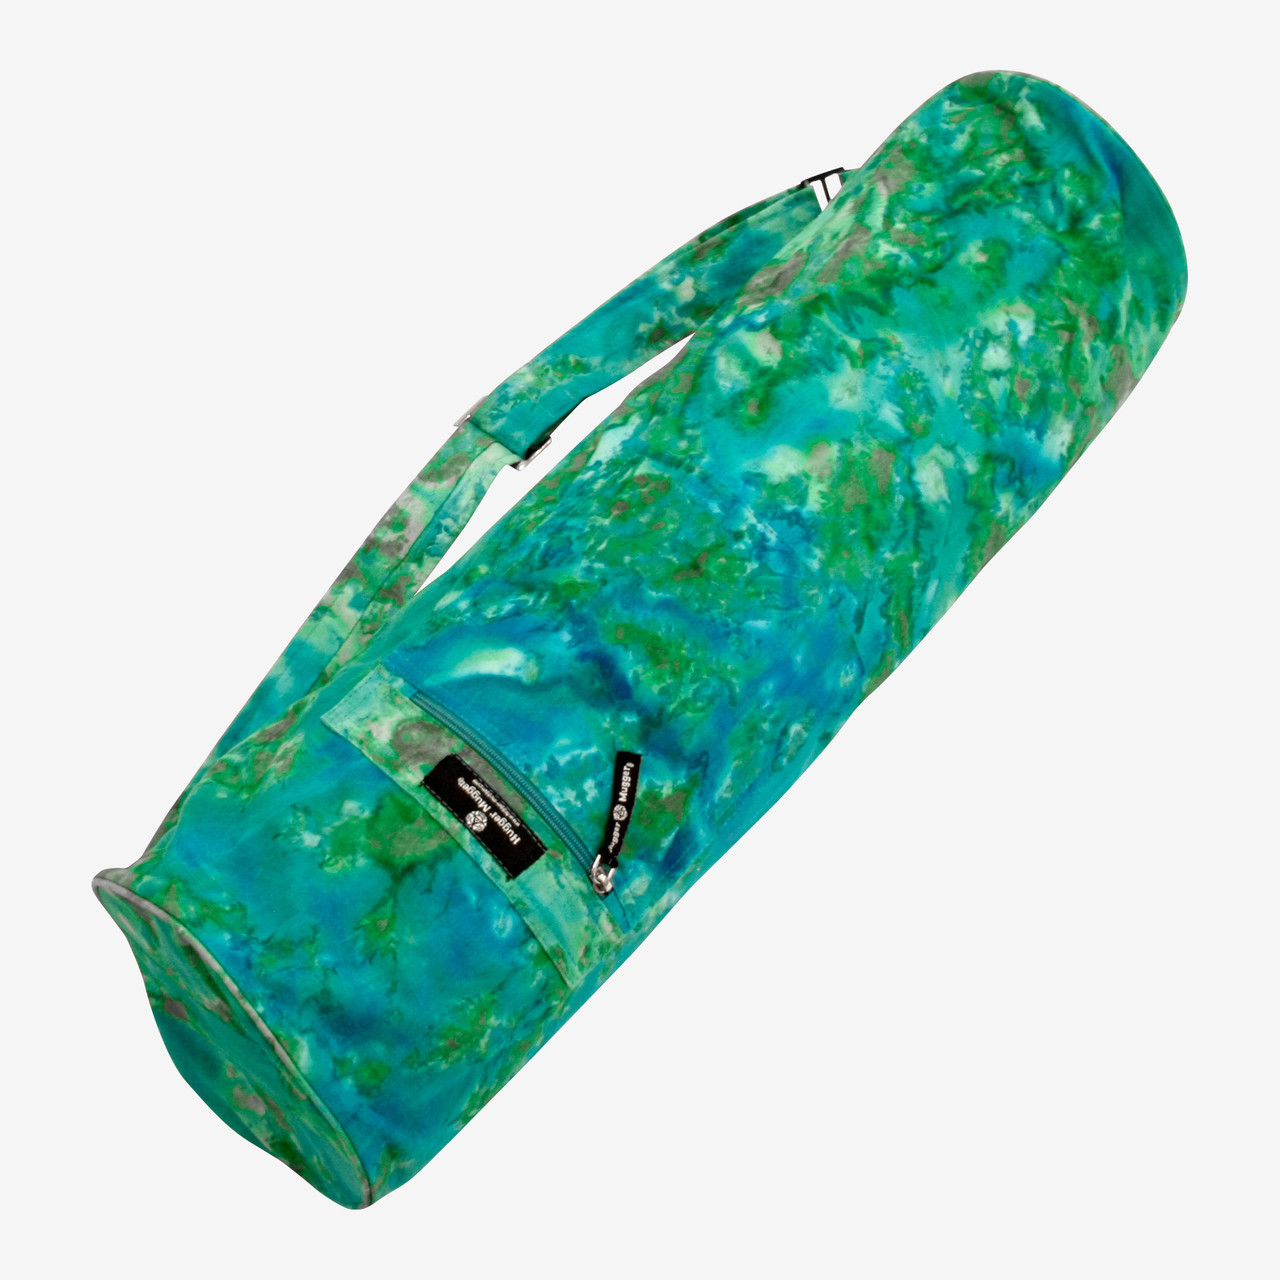 HAGUSU Yoga Mat Bag, Waterproof Large Yoga Bags and Carriers Tote